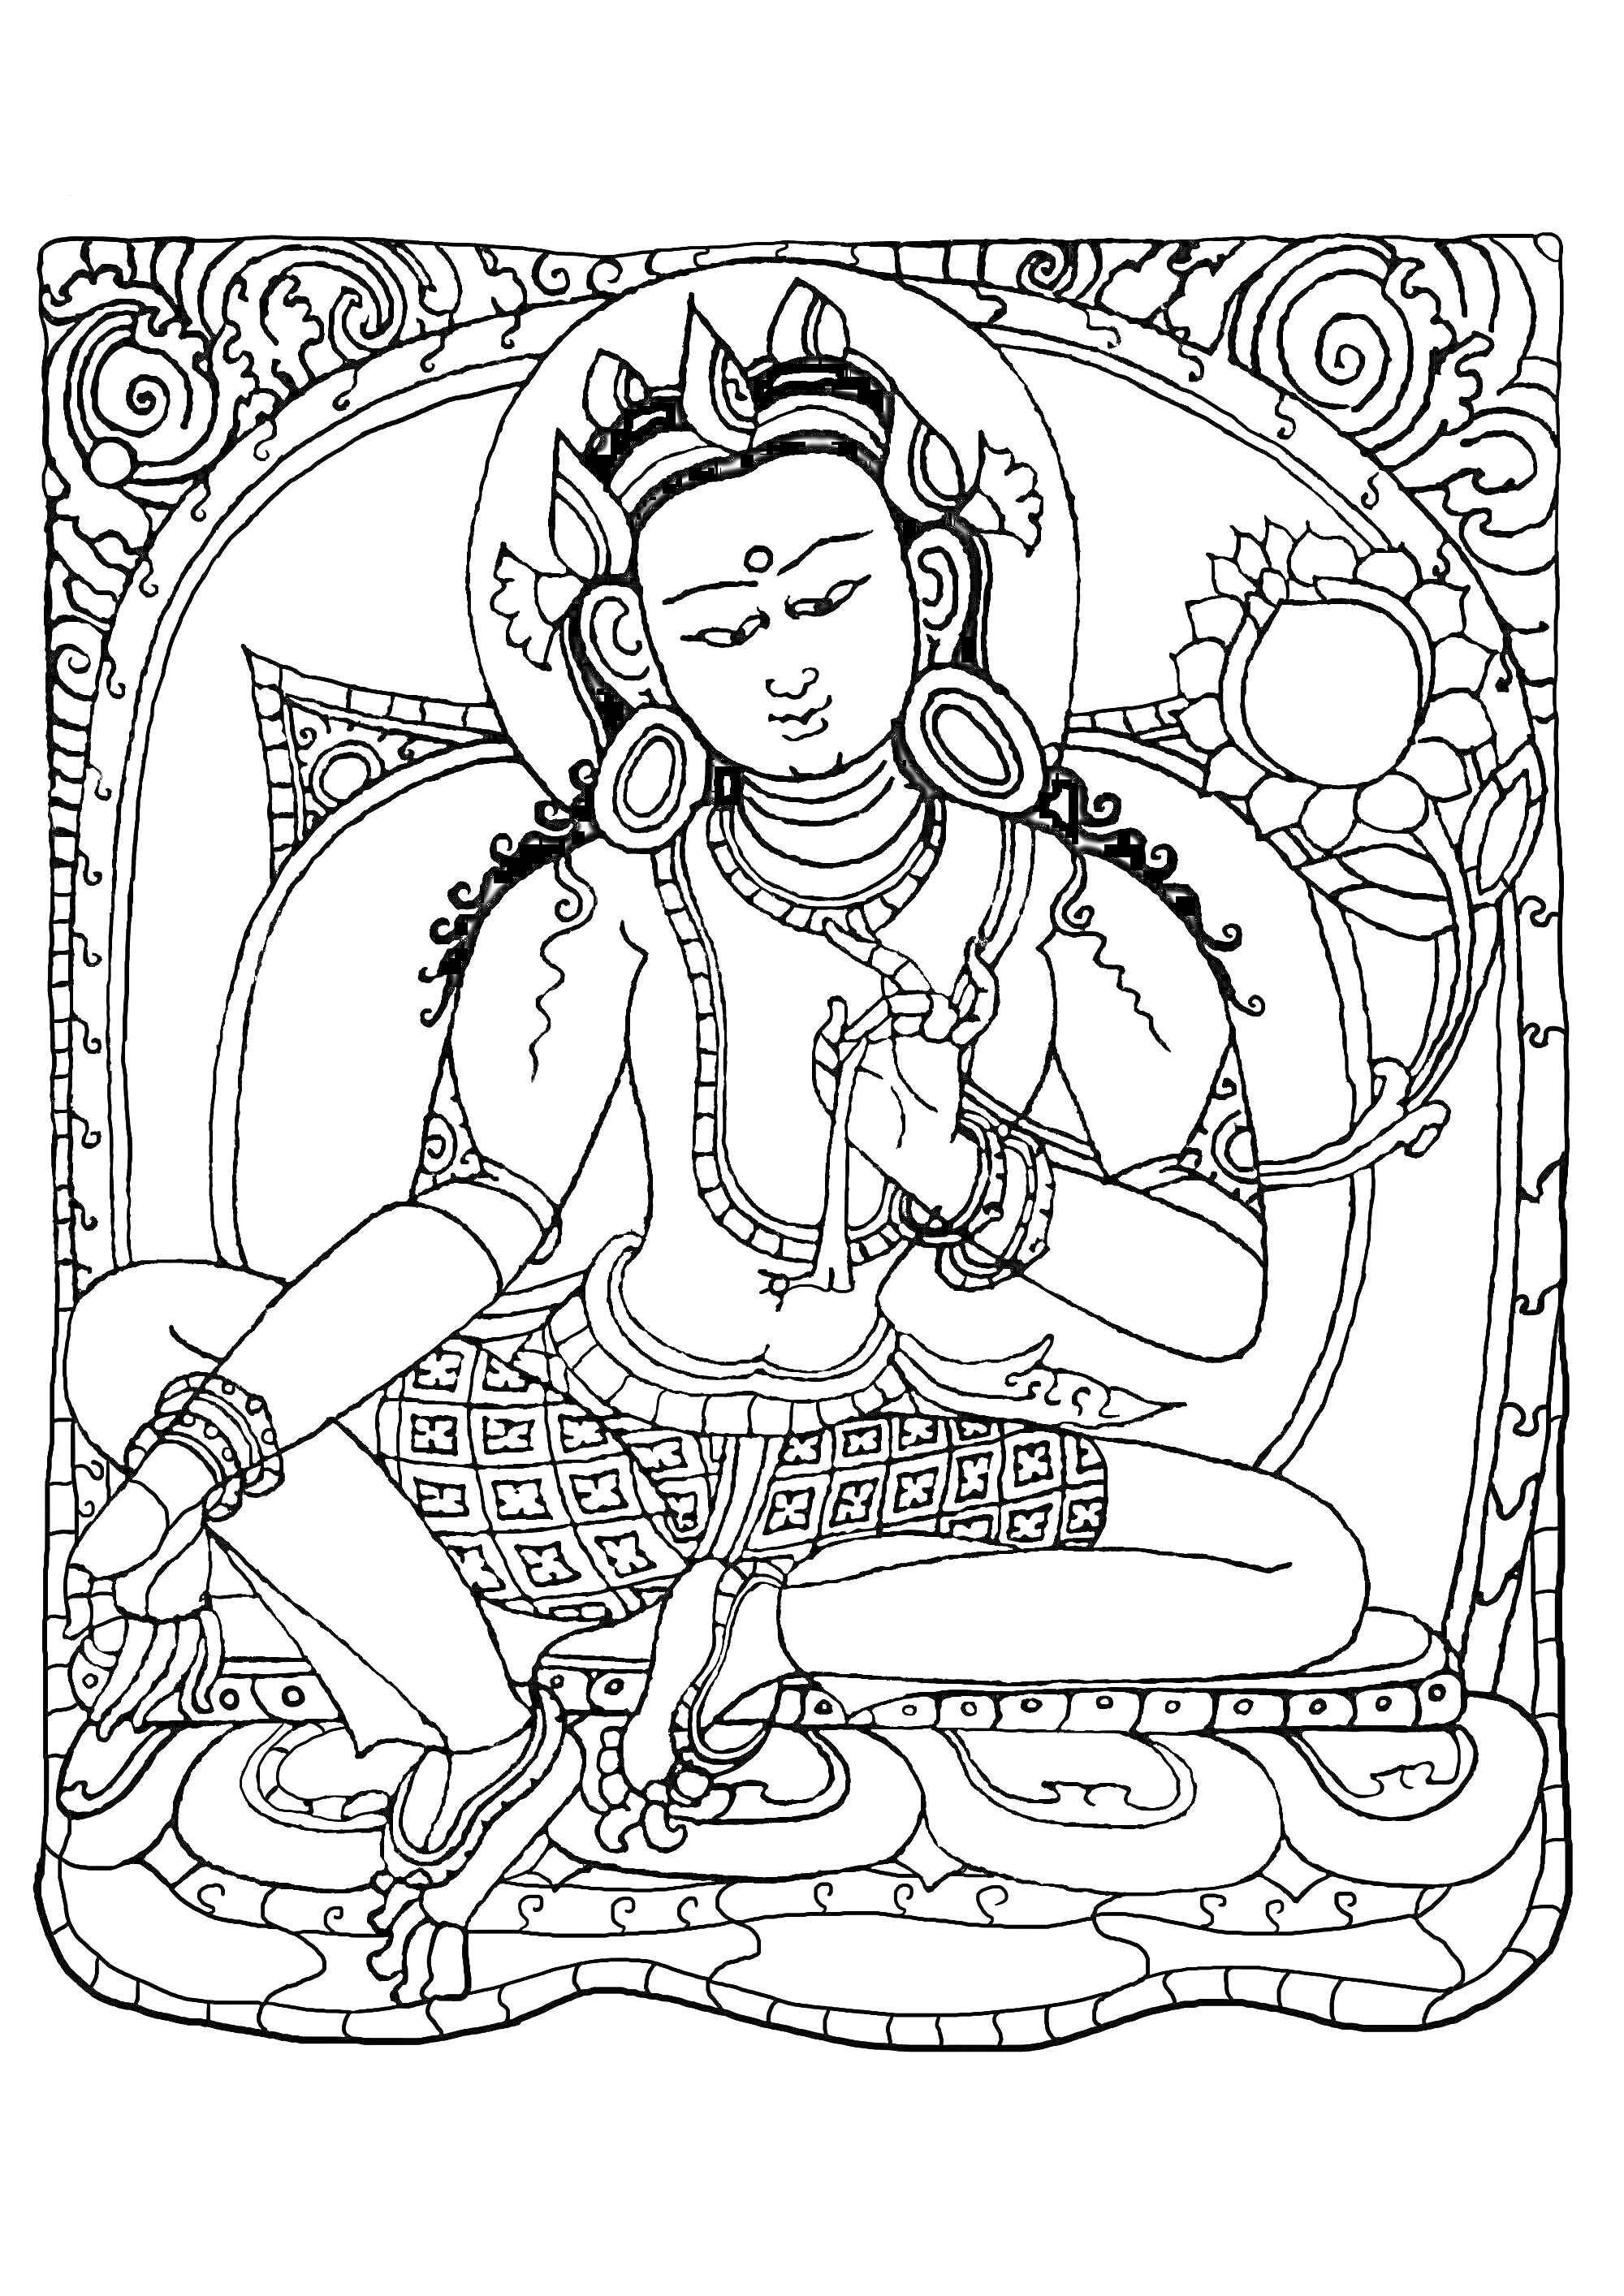 Раскраска Медитирующий человек с короной и цветком лотоса на фоне орнаментального узора